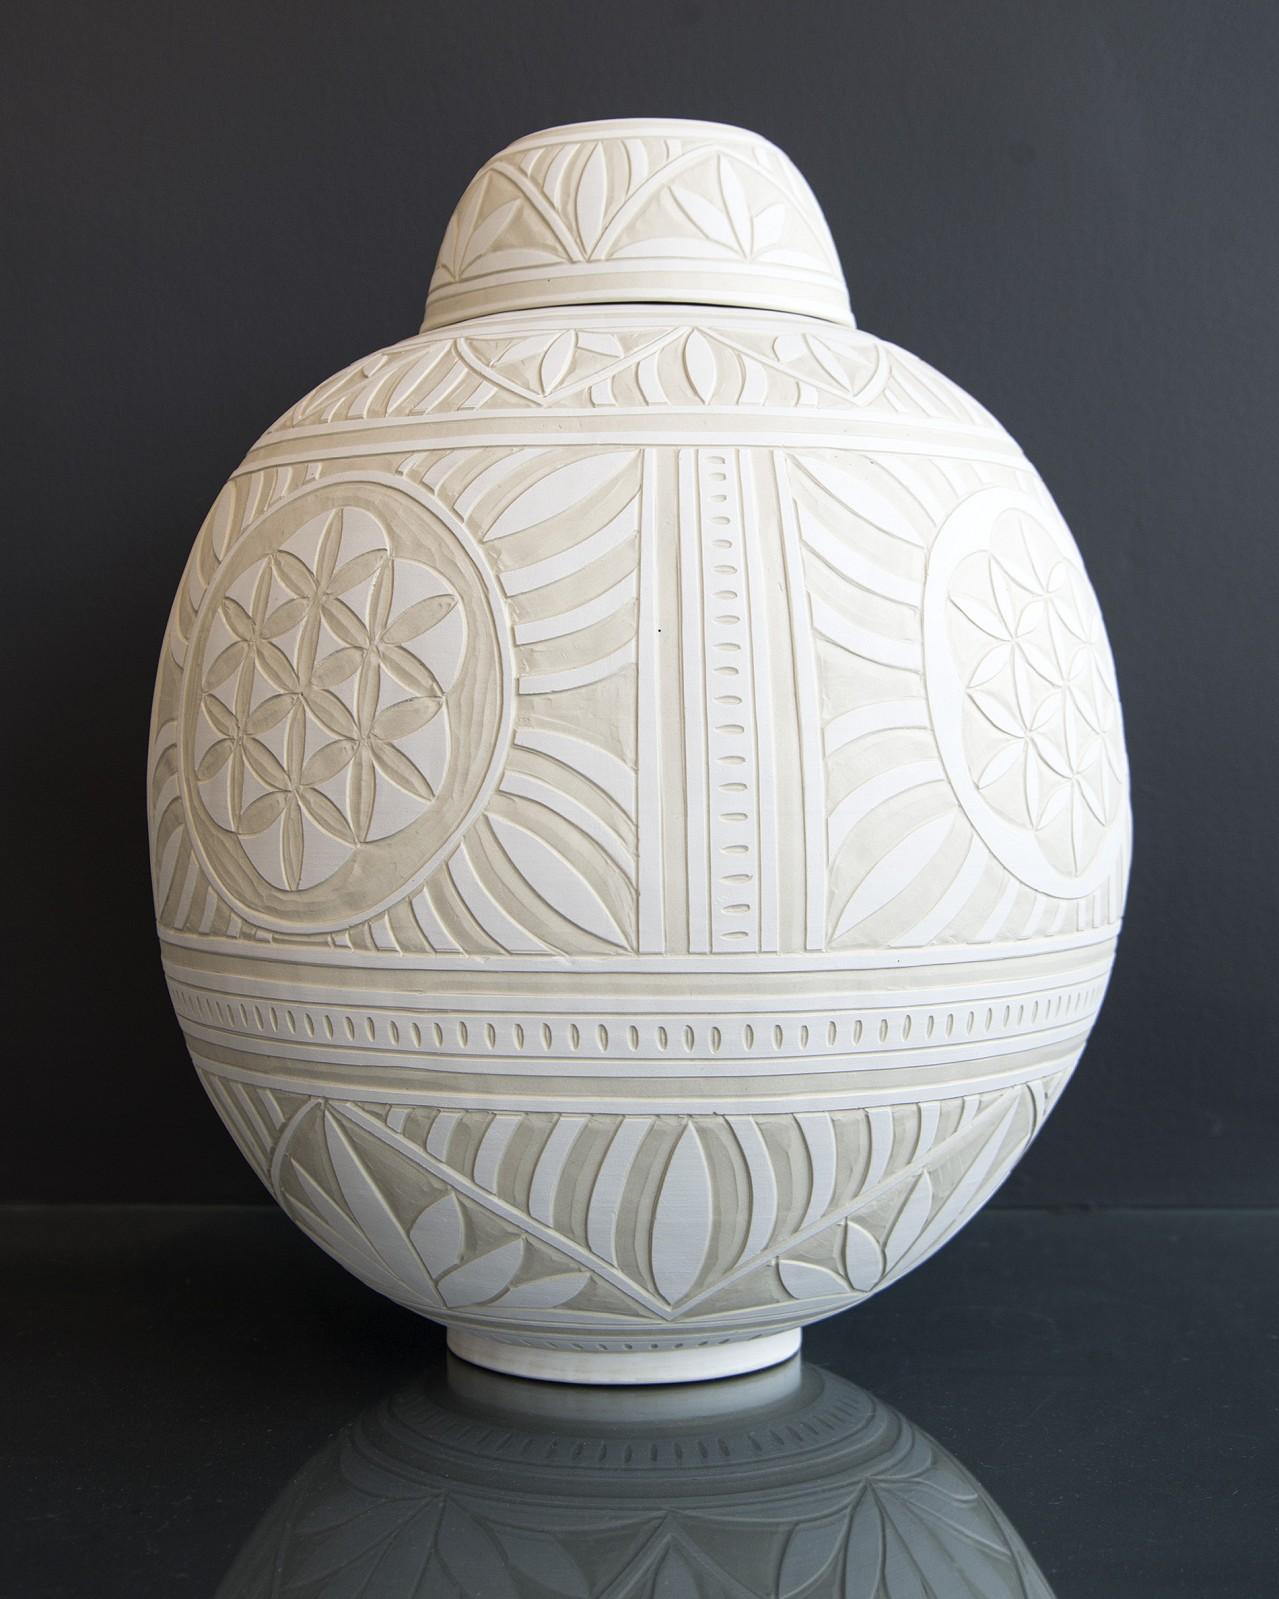 Large Engraved Ginger Jar - decorative, detailed, handcrafted, porcelain vessel - Black Abstract Sculpture by Loren Kaplan